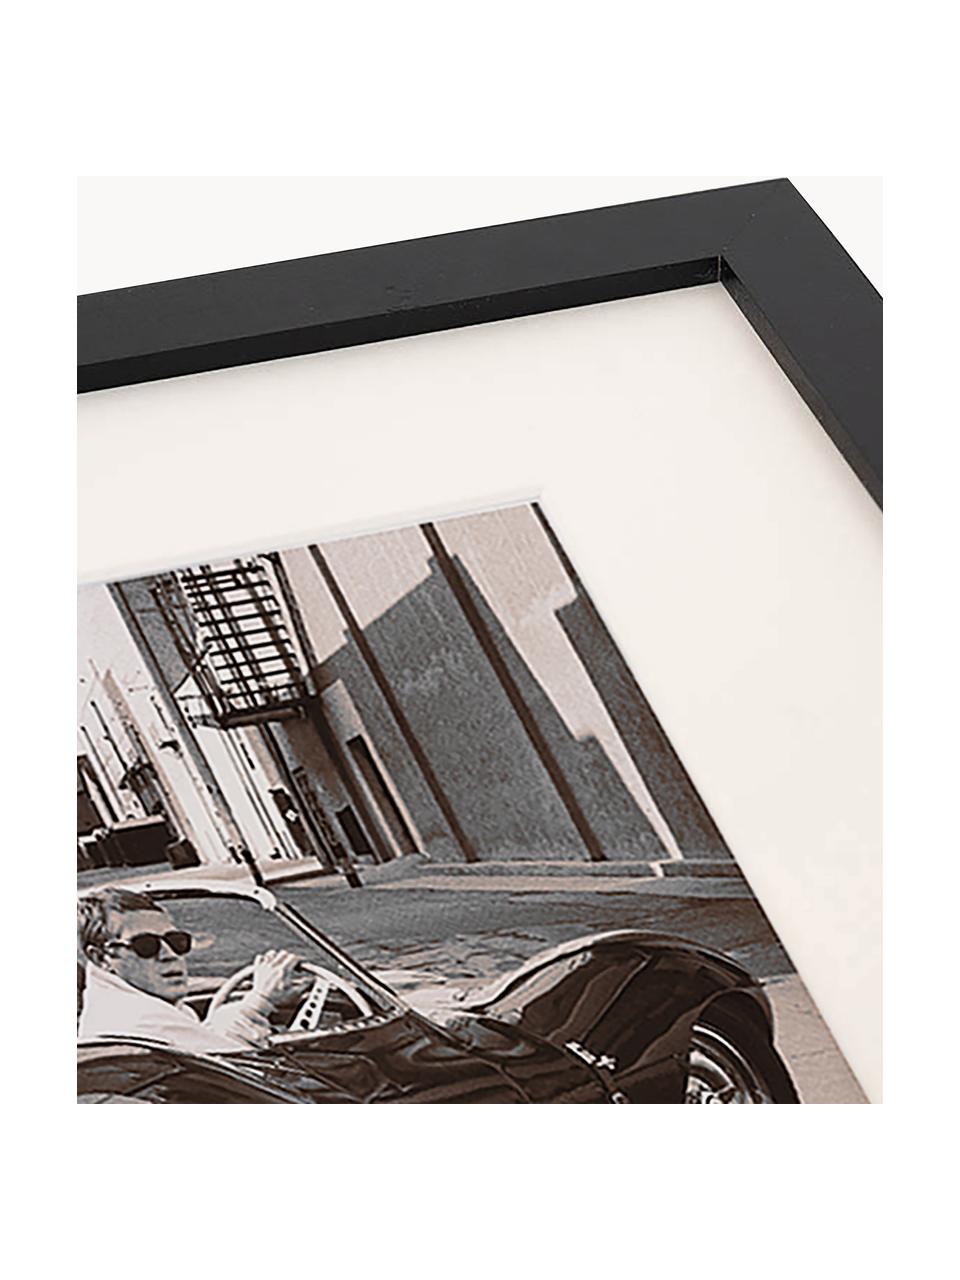 Zarámovaná fotografie Steve McQueen in his Jaguar, Černá, tlumeně bílá, Š 43 cm, V 33 cm